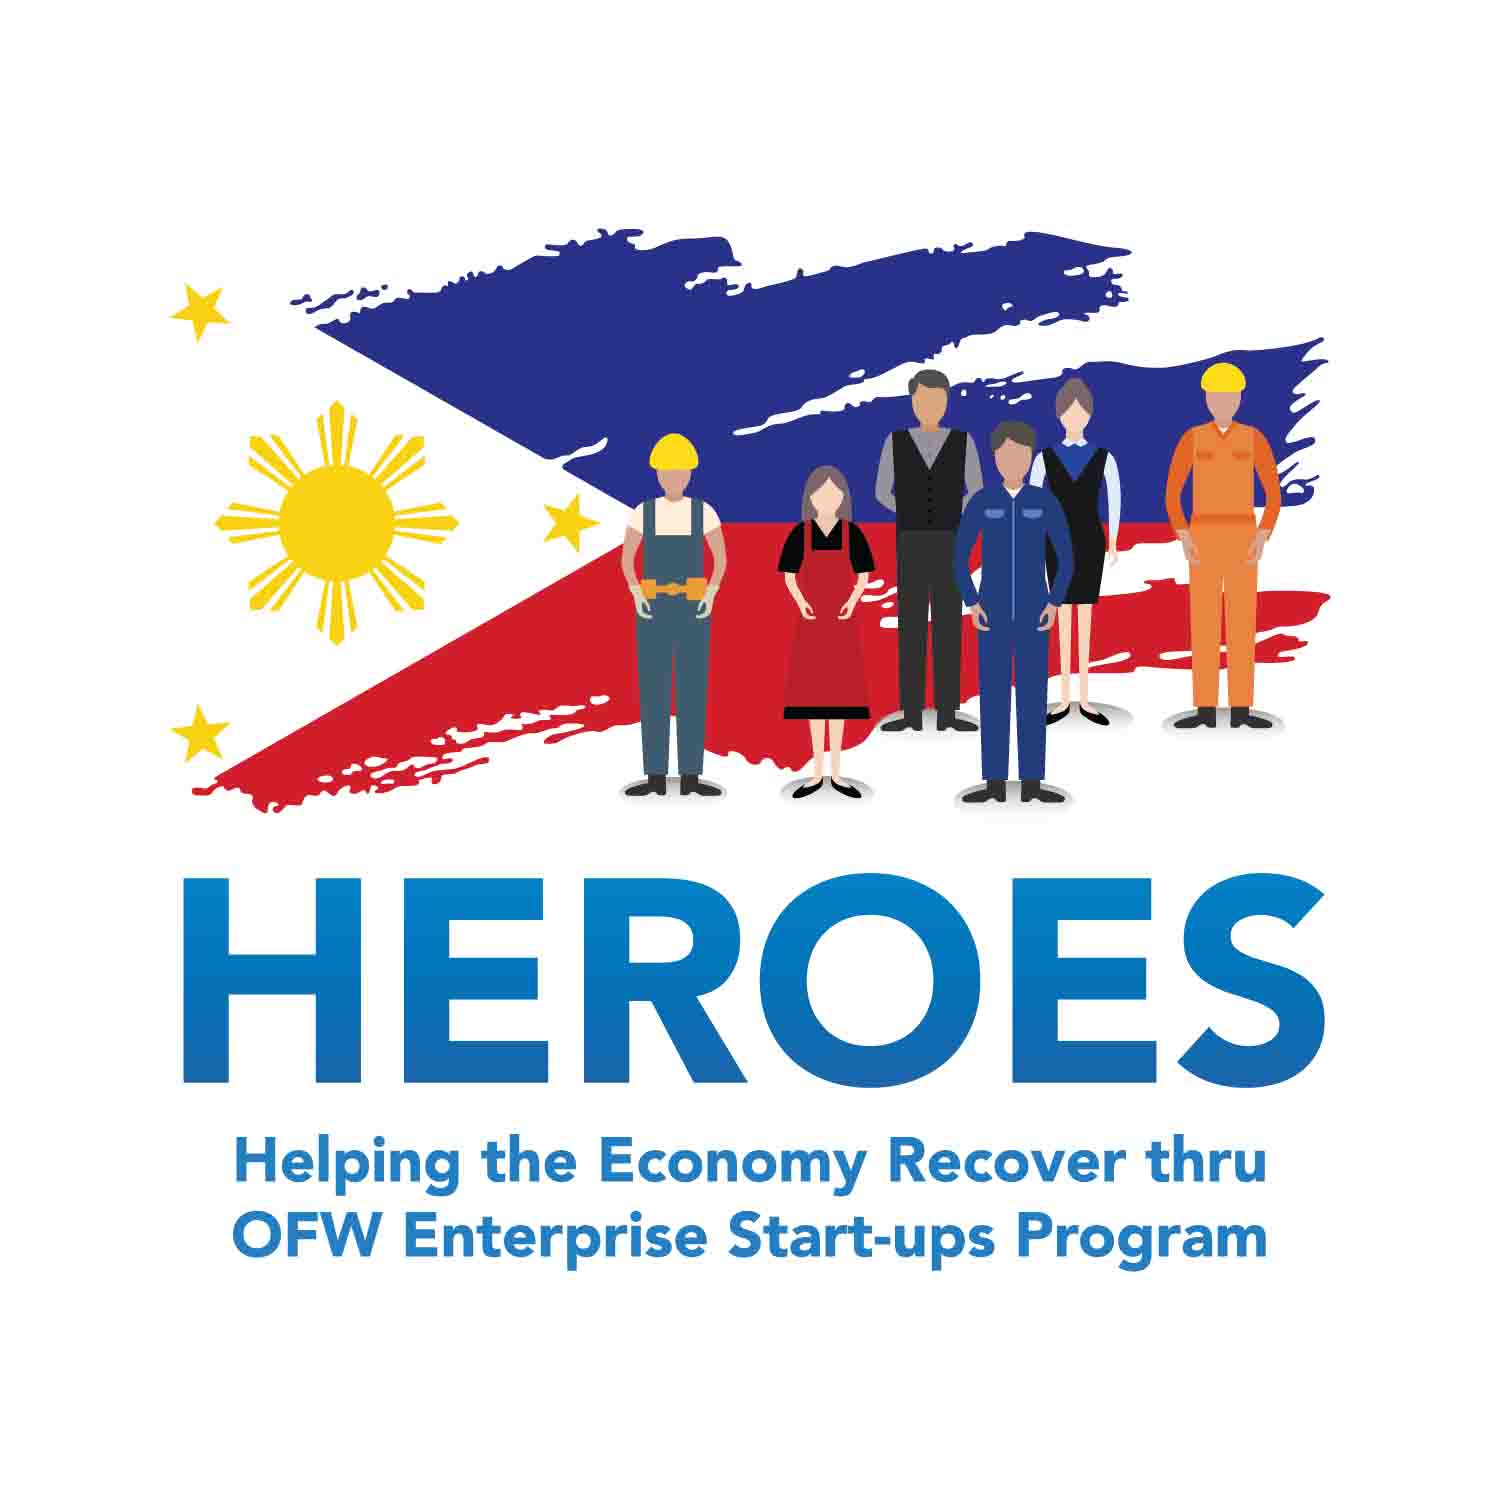 OFW HEROES program logo